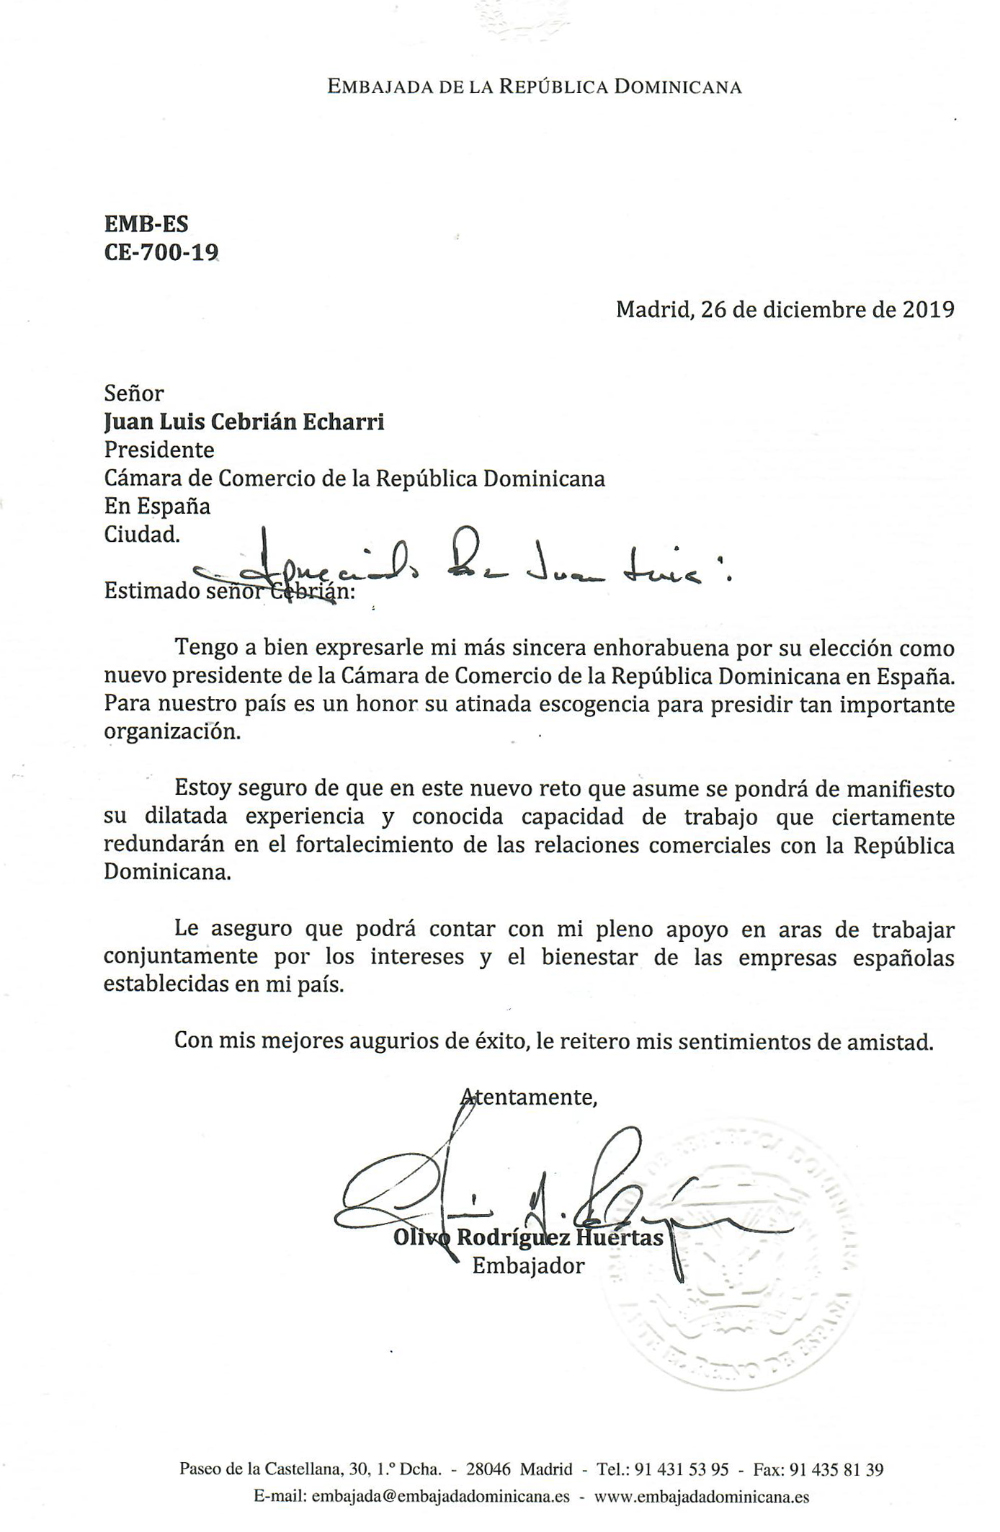 Felicitaciones del Embajador a Juan Luis Cebrian